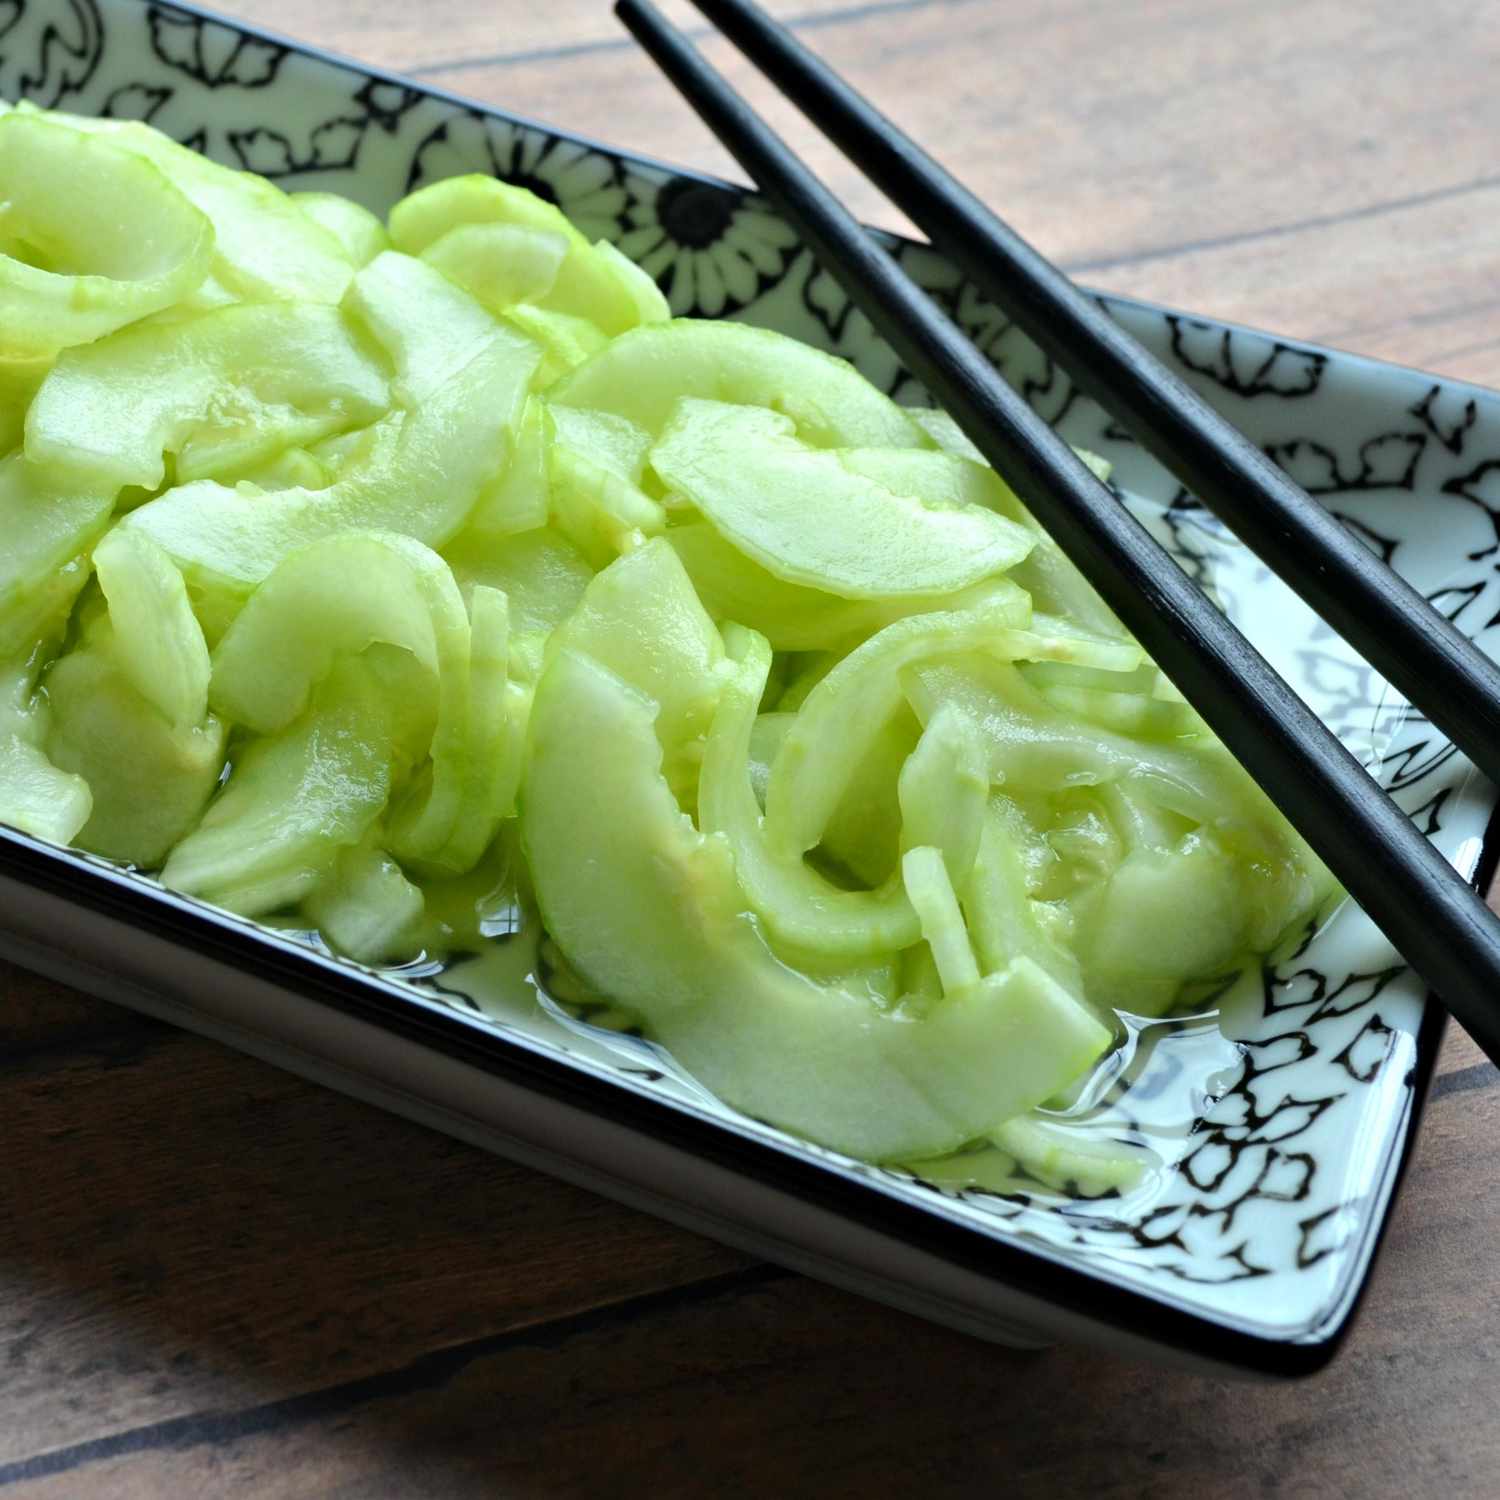 Sunomono (японский салат из огурца)